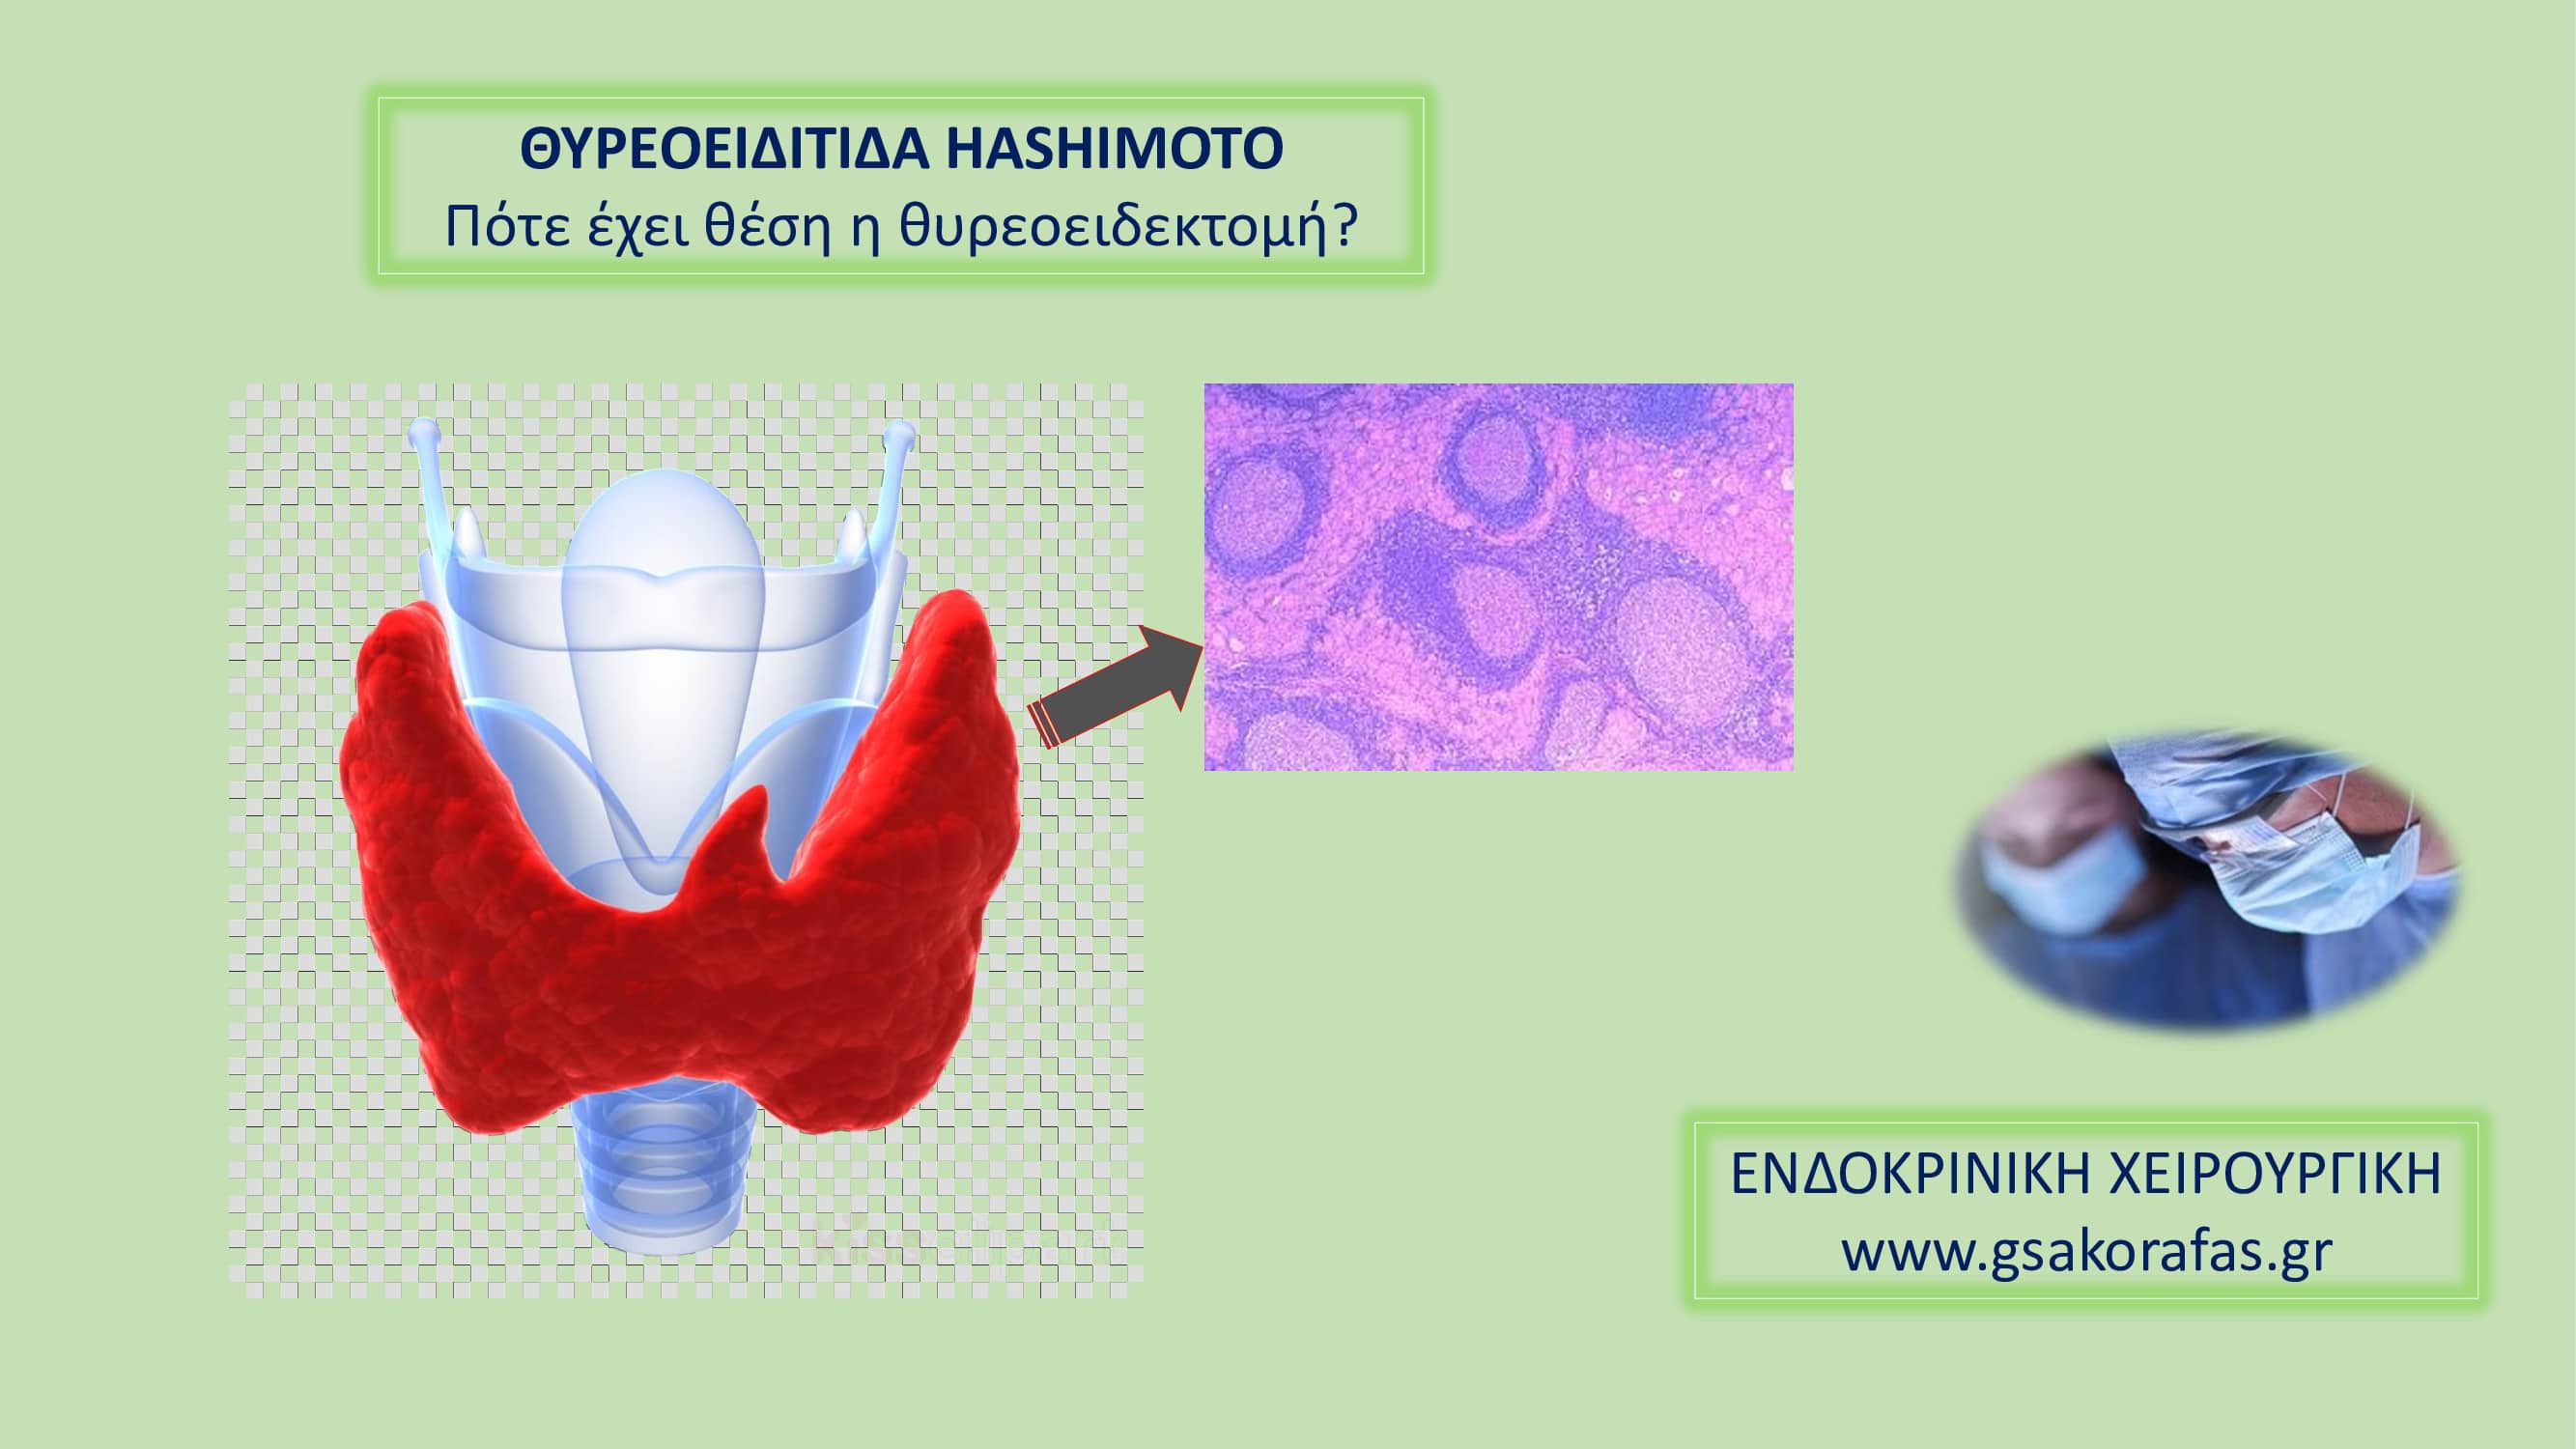 Θυρεοειδίτιδα Hashimoto-πότε έχει θέση η θυρεοειδεκτομή;